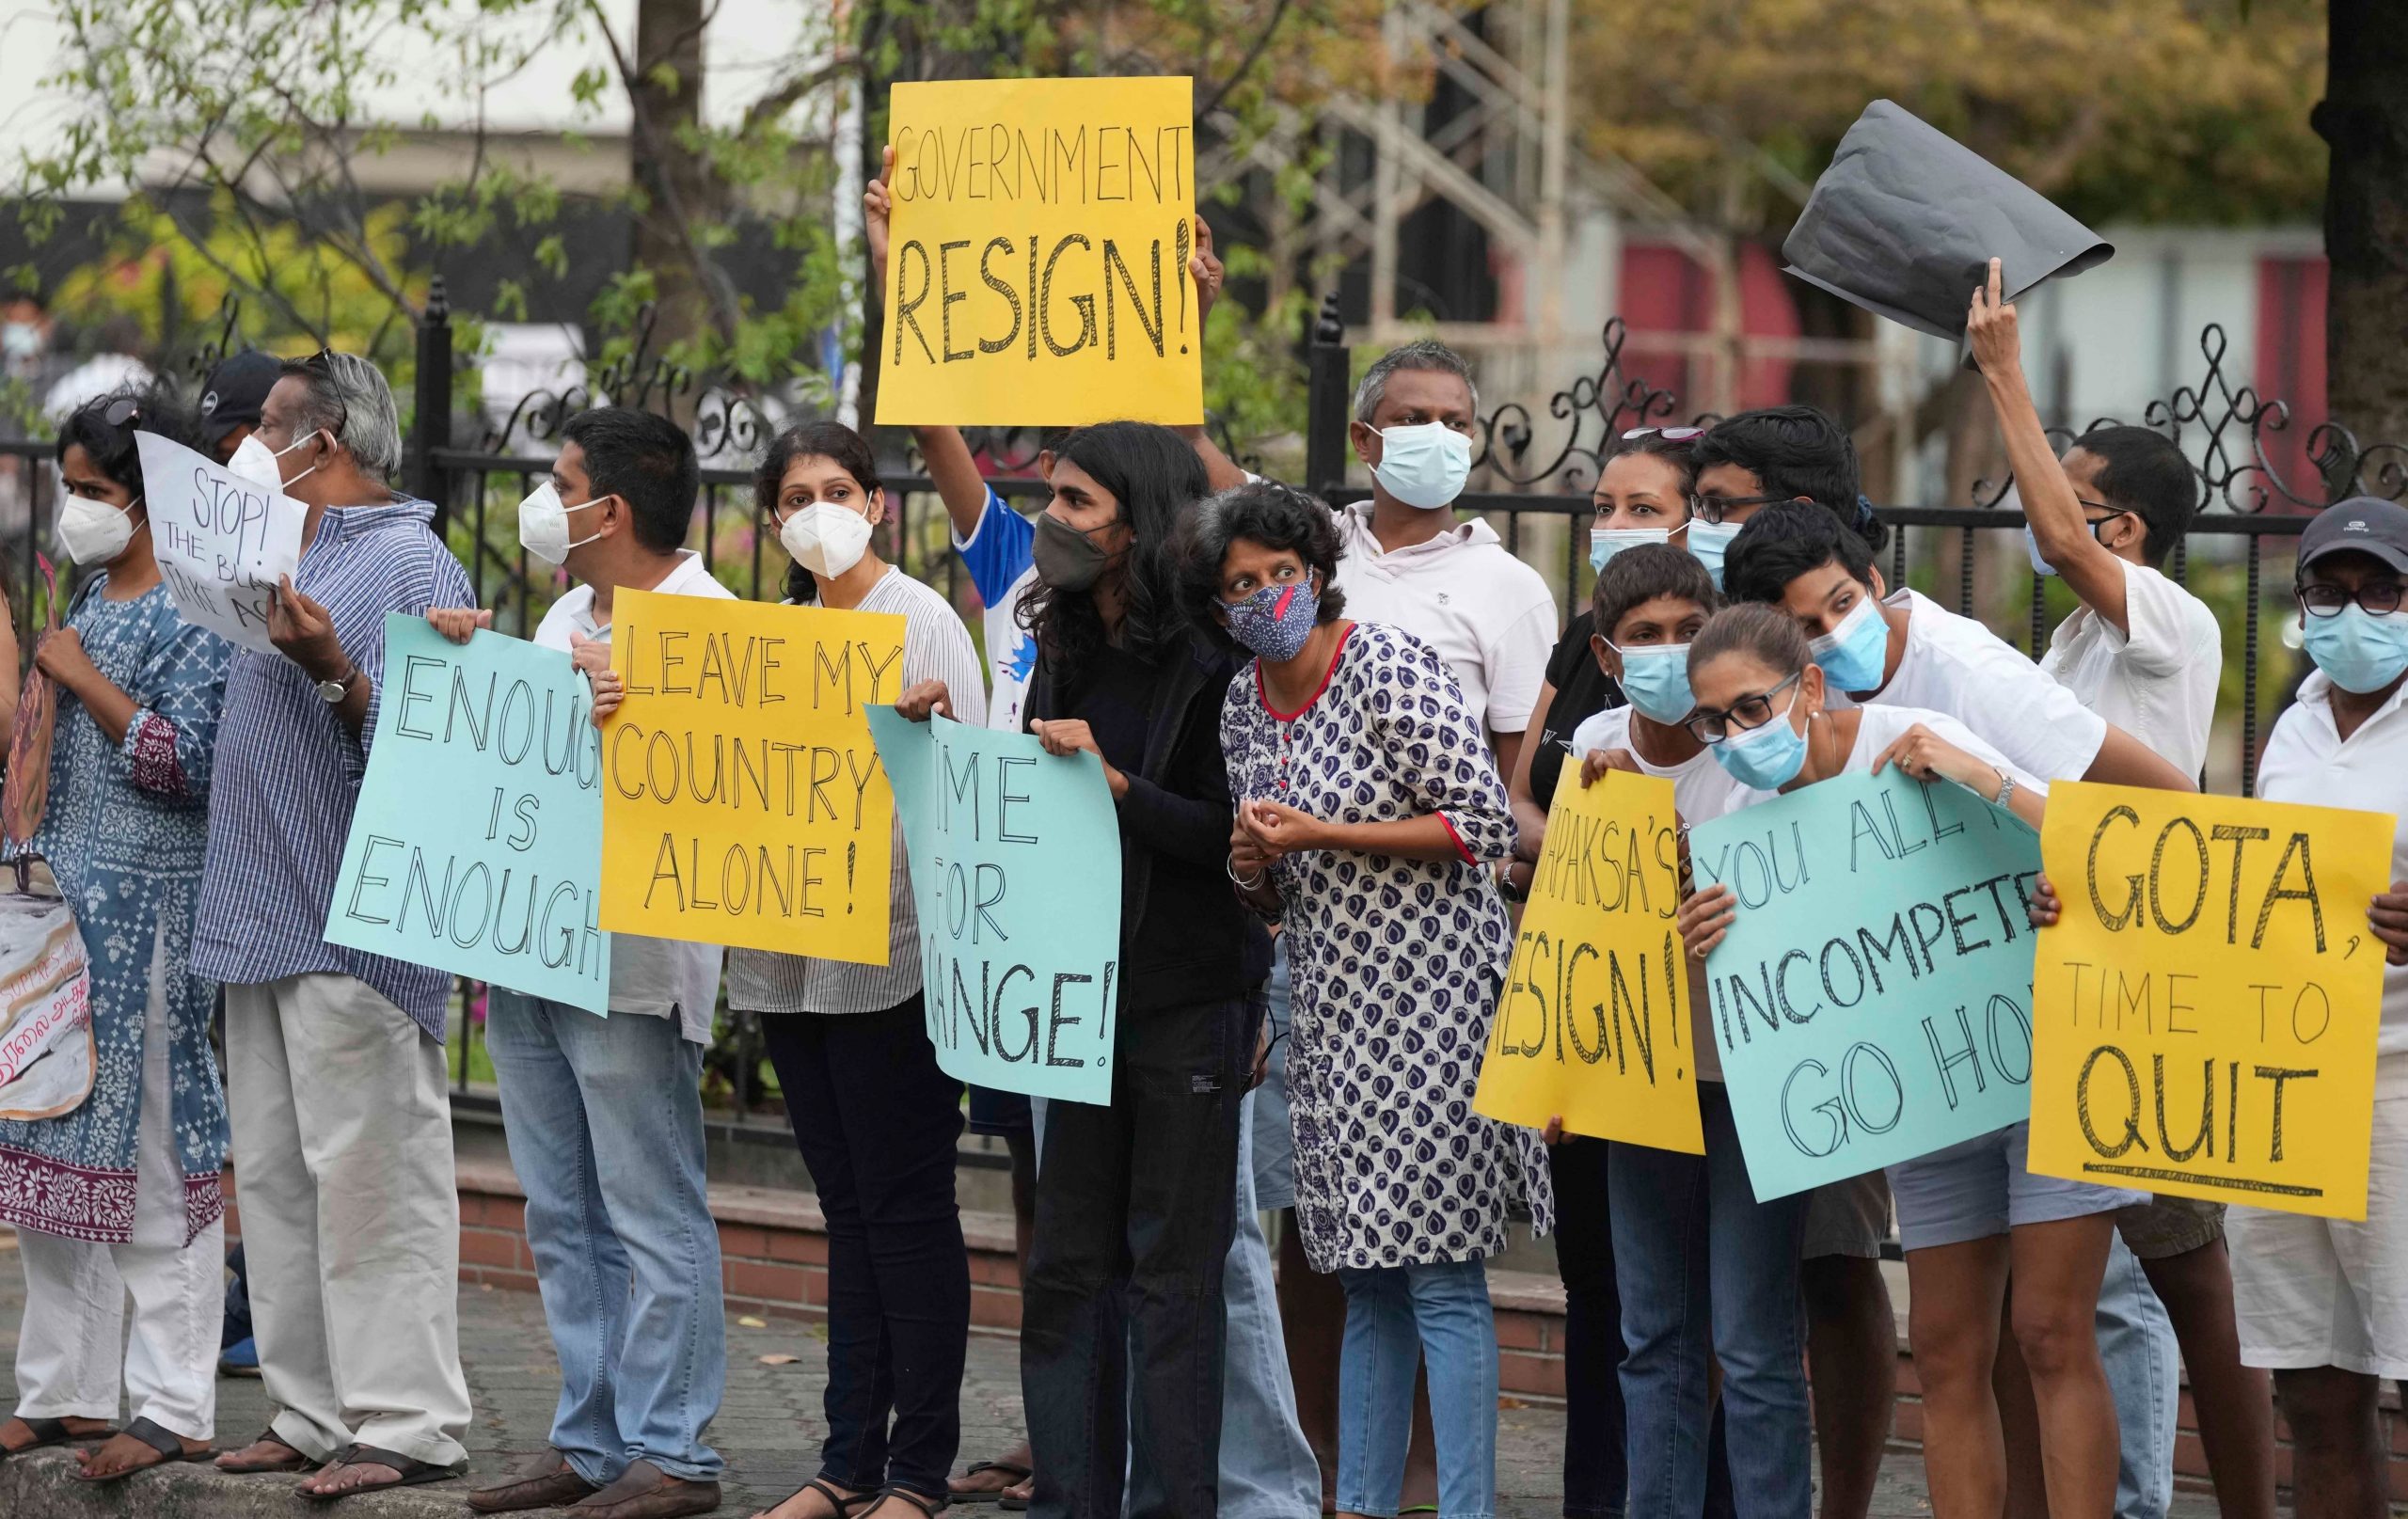 Sri Lanka crisis: Expats protest in Maldives over safe passage of President Gotabaya Rajapaksha